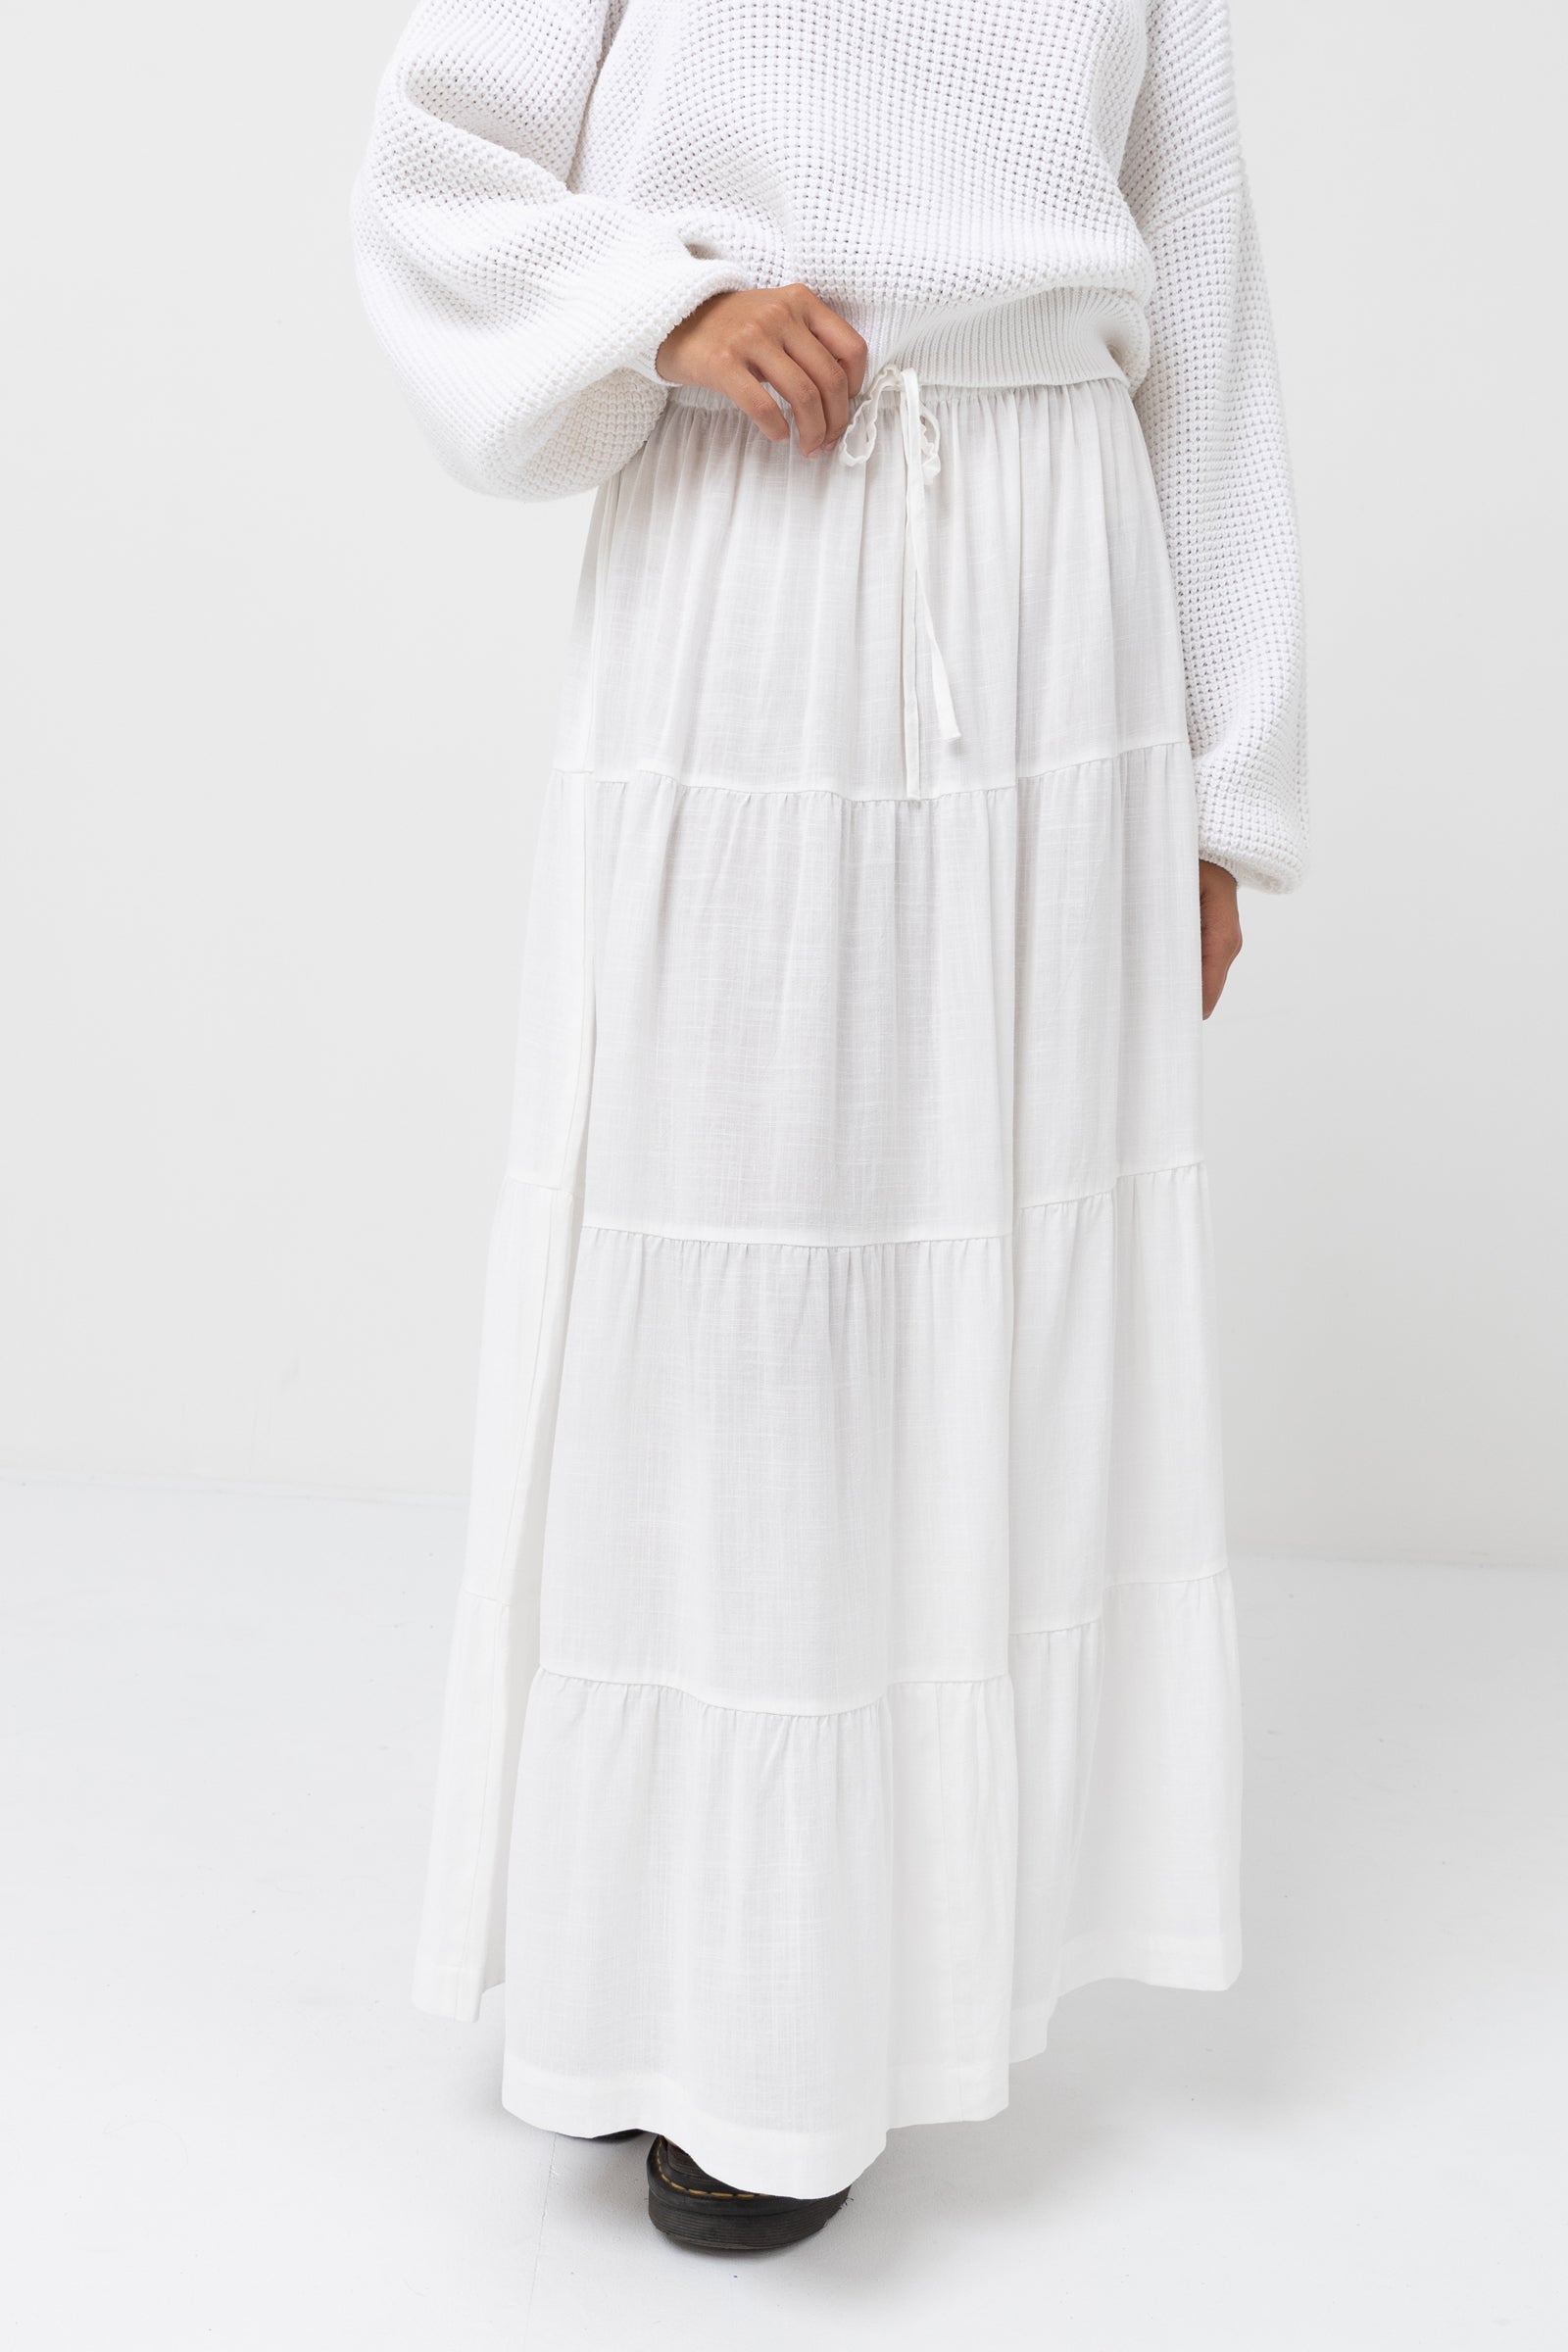 $398 Amur Women's White Koral Tiered Organic Cotton Maxi Skirt Size 8